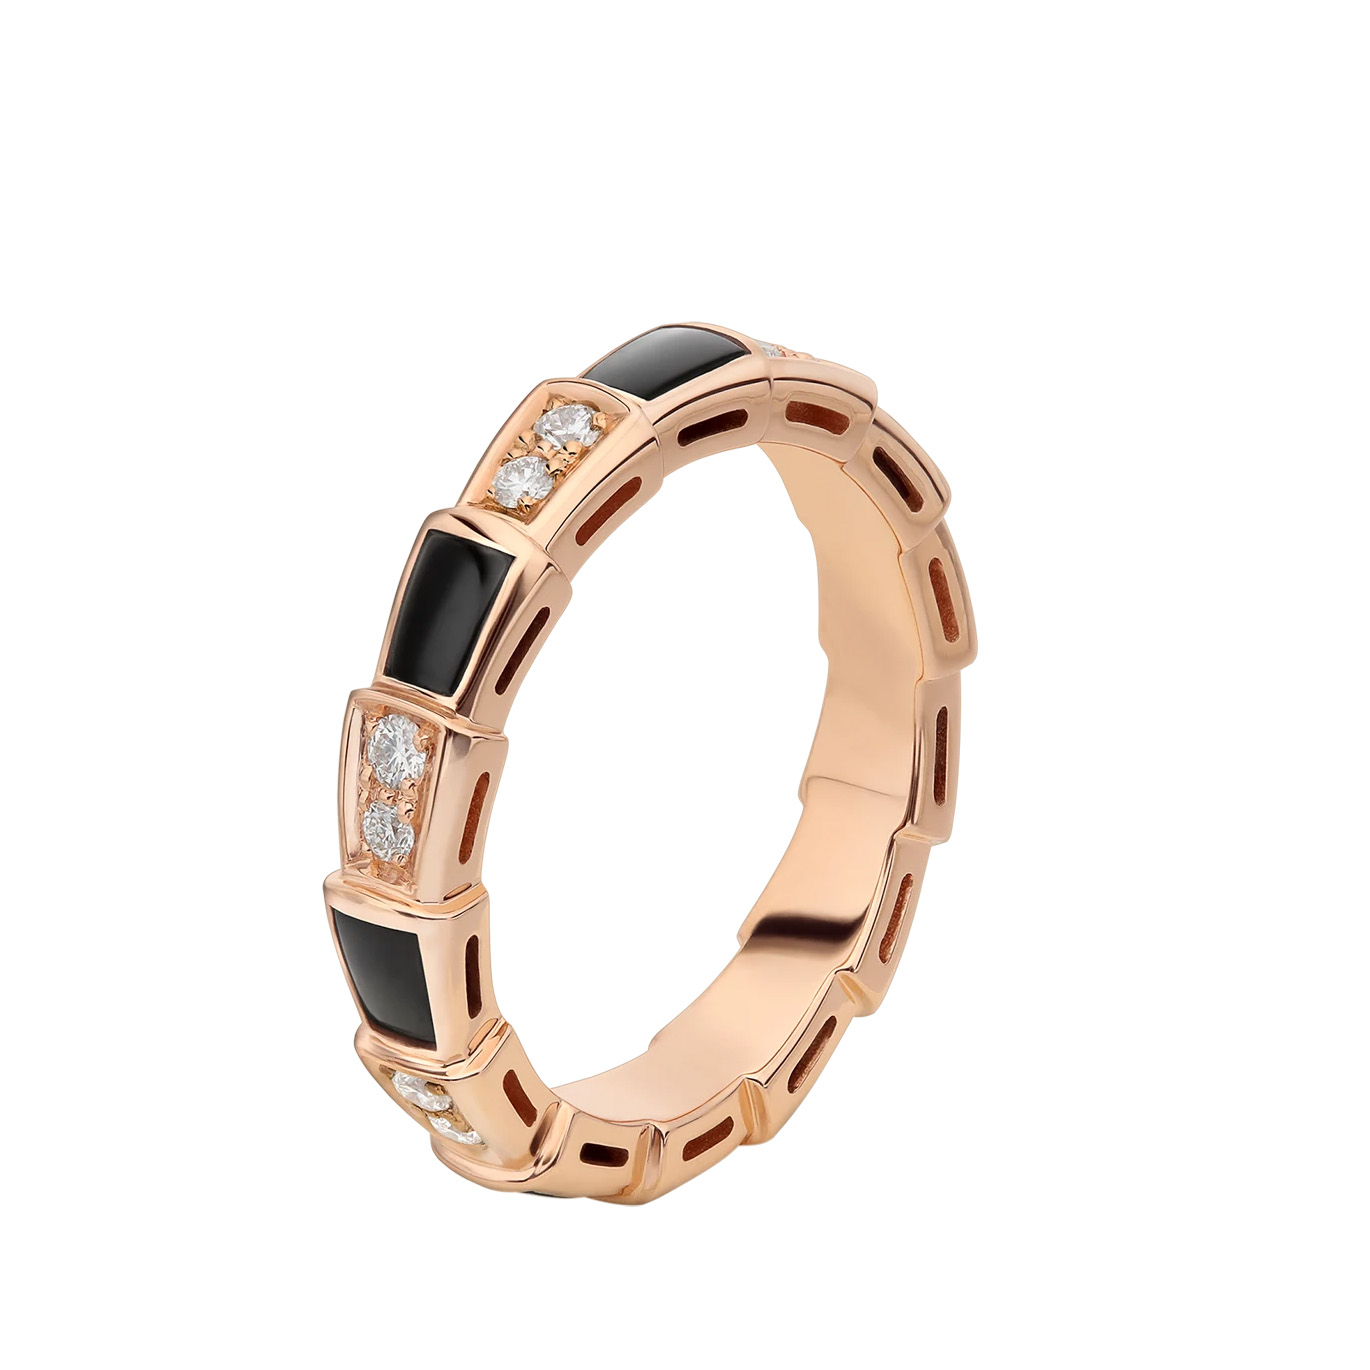 Grossistdesign 18k roséguld tunn ring OEM/ODM Smycken set med onyxelement och pavédiamanter 20 år i OEM-smycken